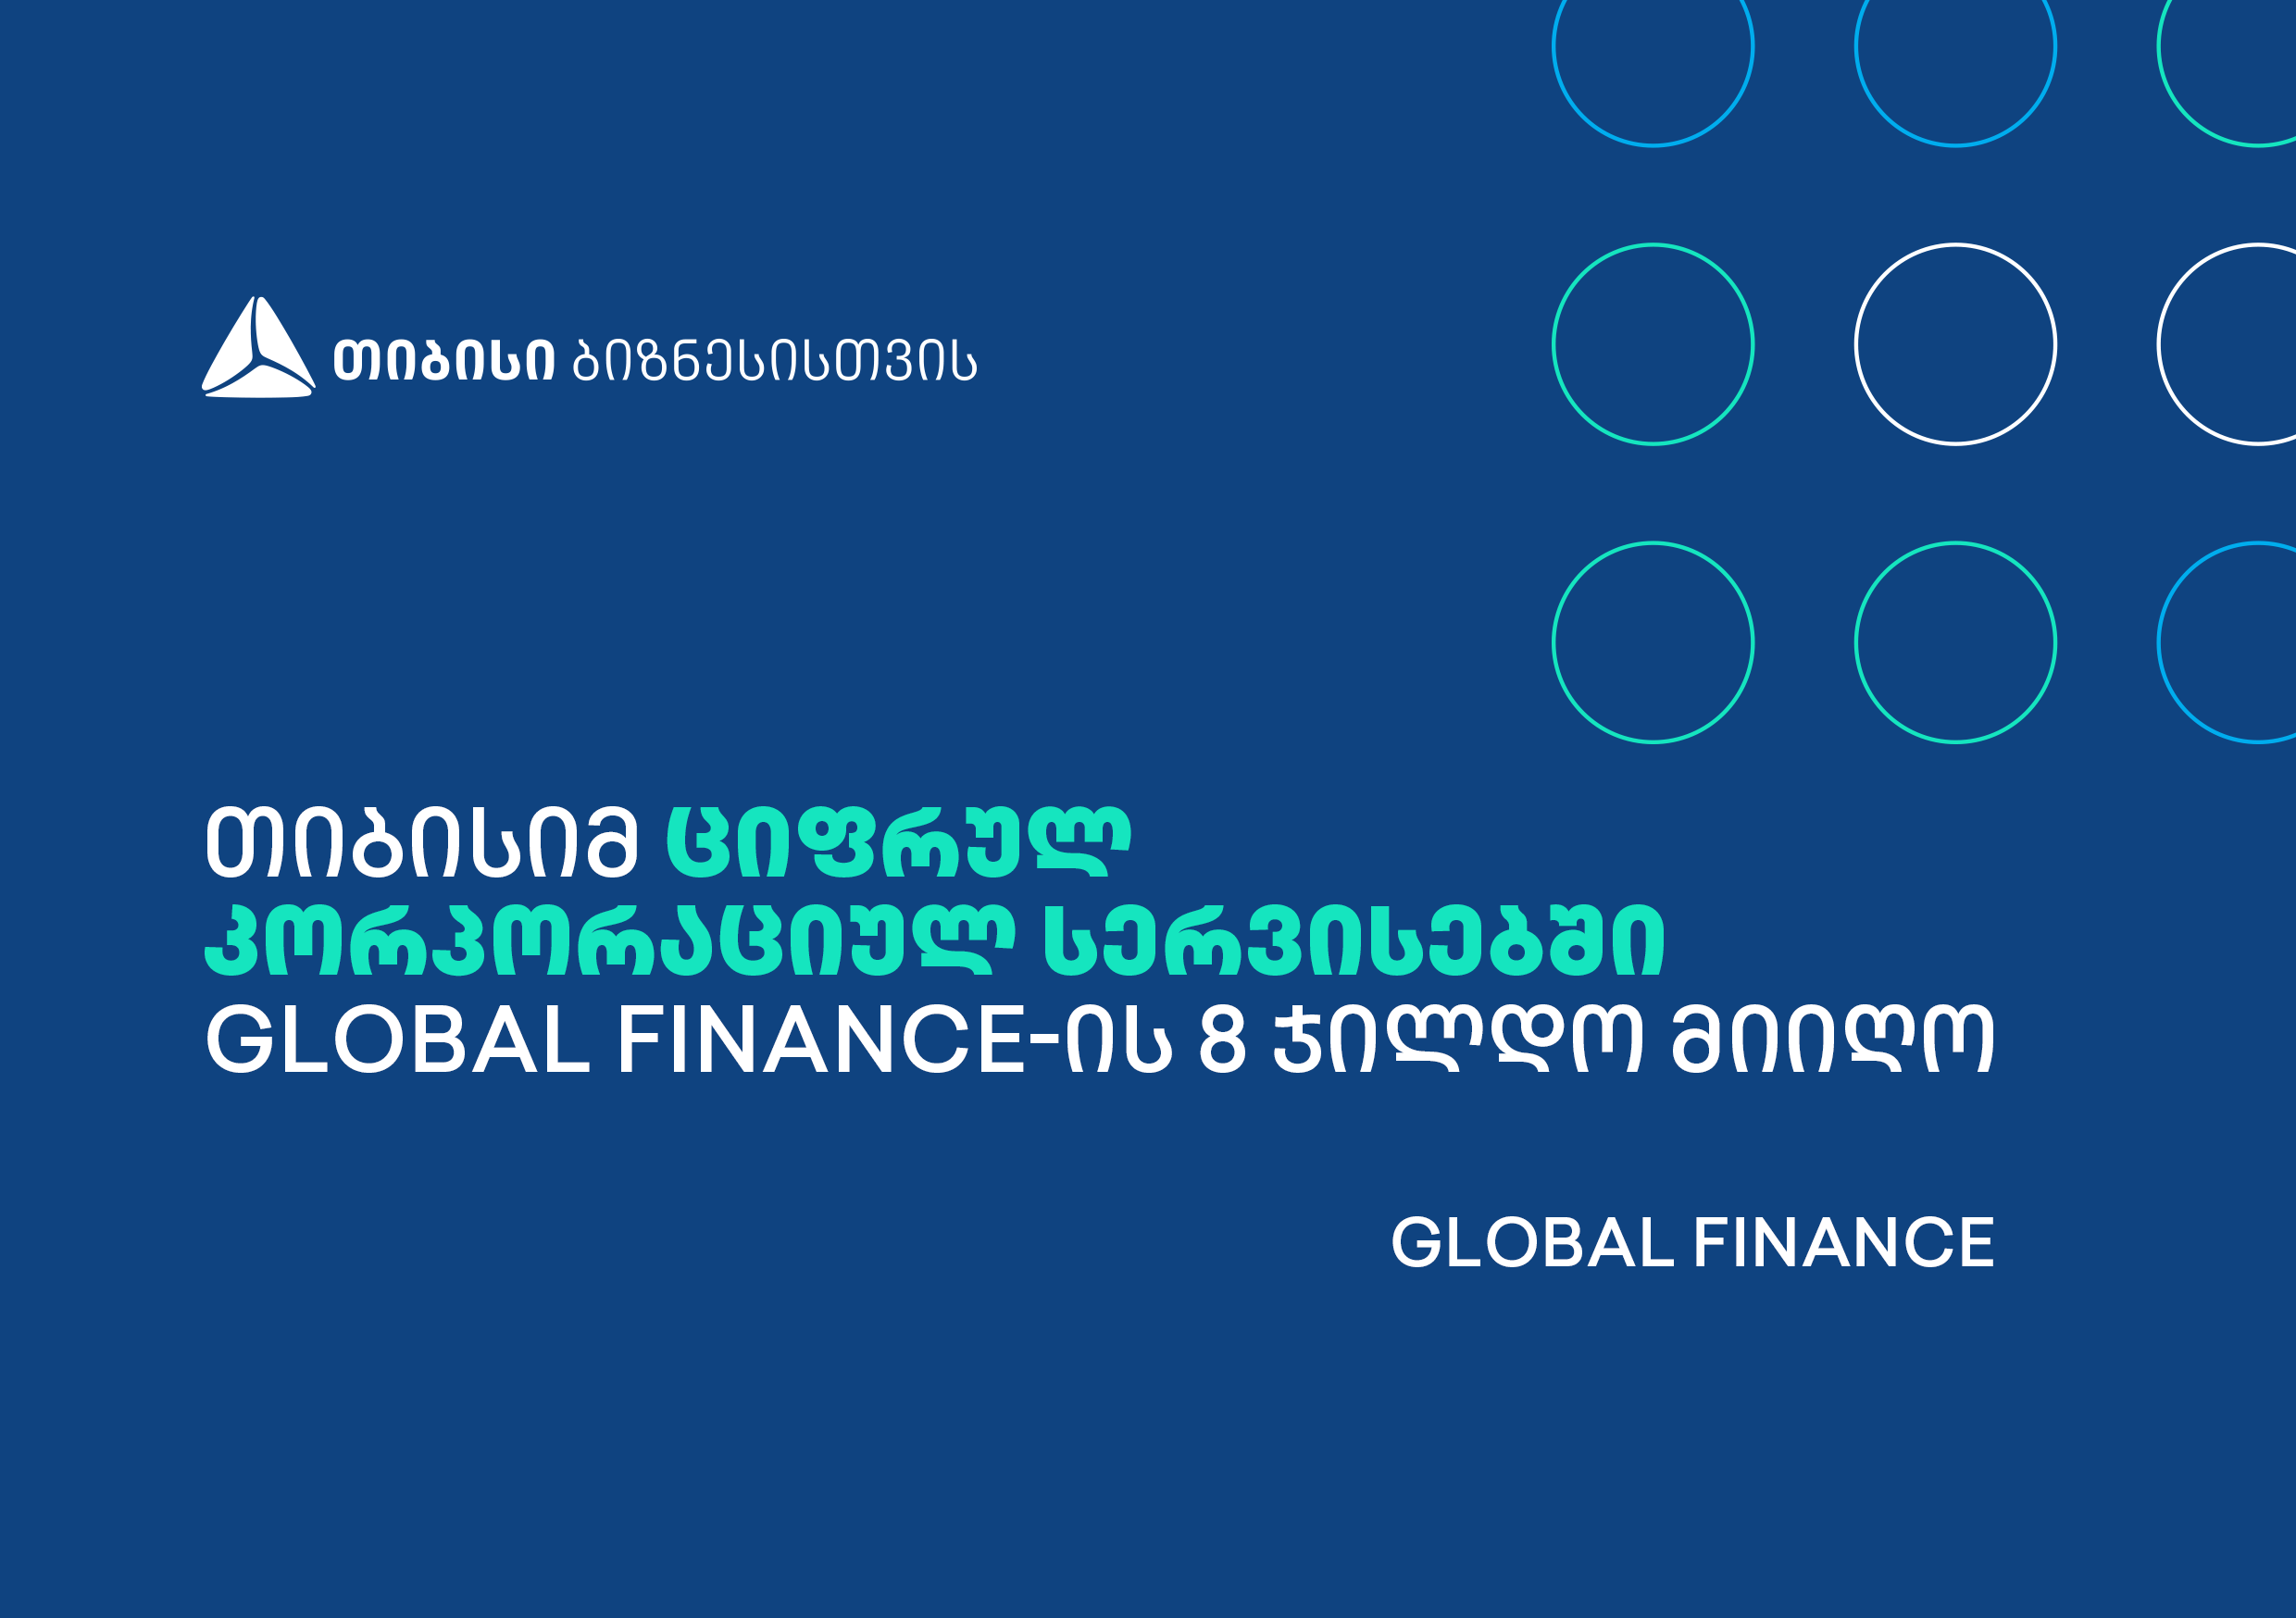 თიბისიმ ციფრულ კორპორაციულ სერვისებში Global Finance-ის 8 ჯილდო მიიღო